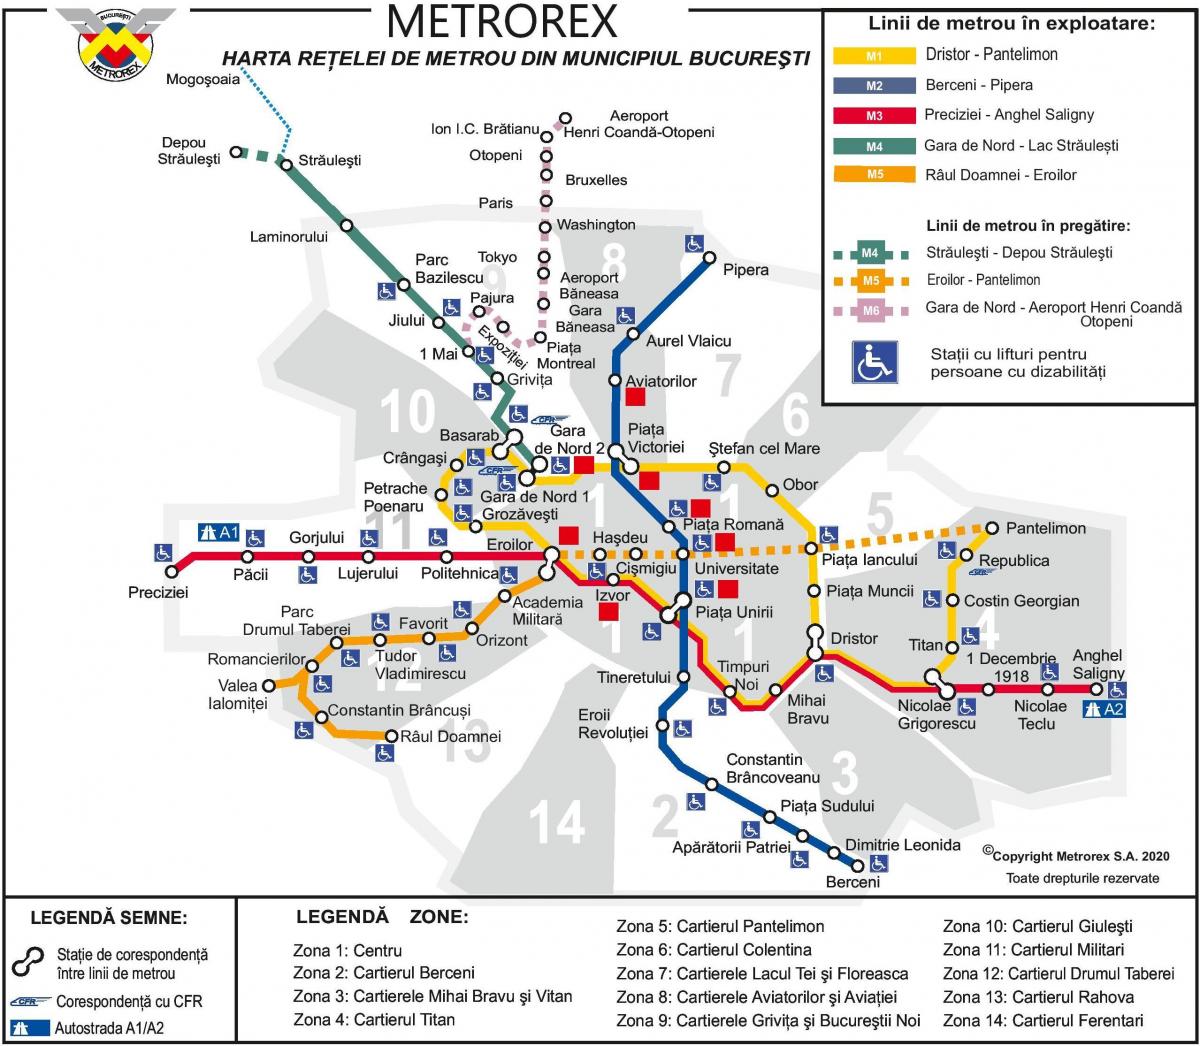 Boekarest metro stations kaart